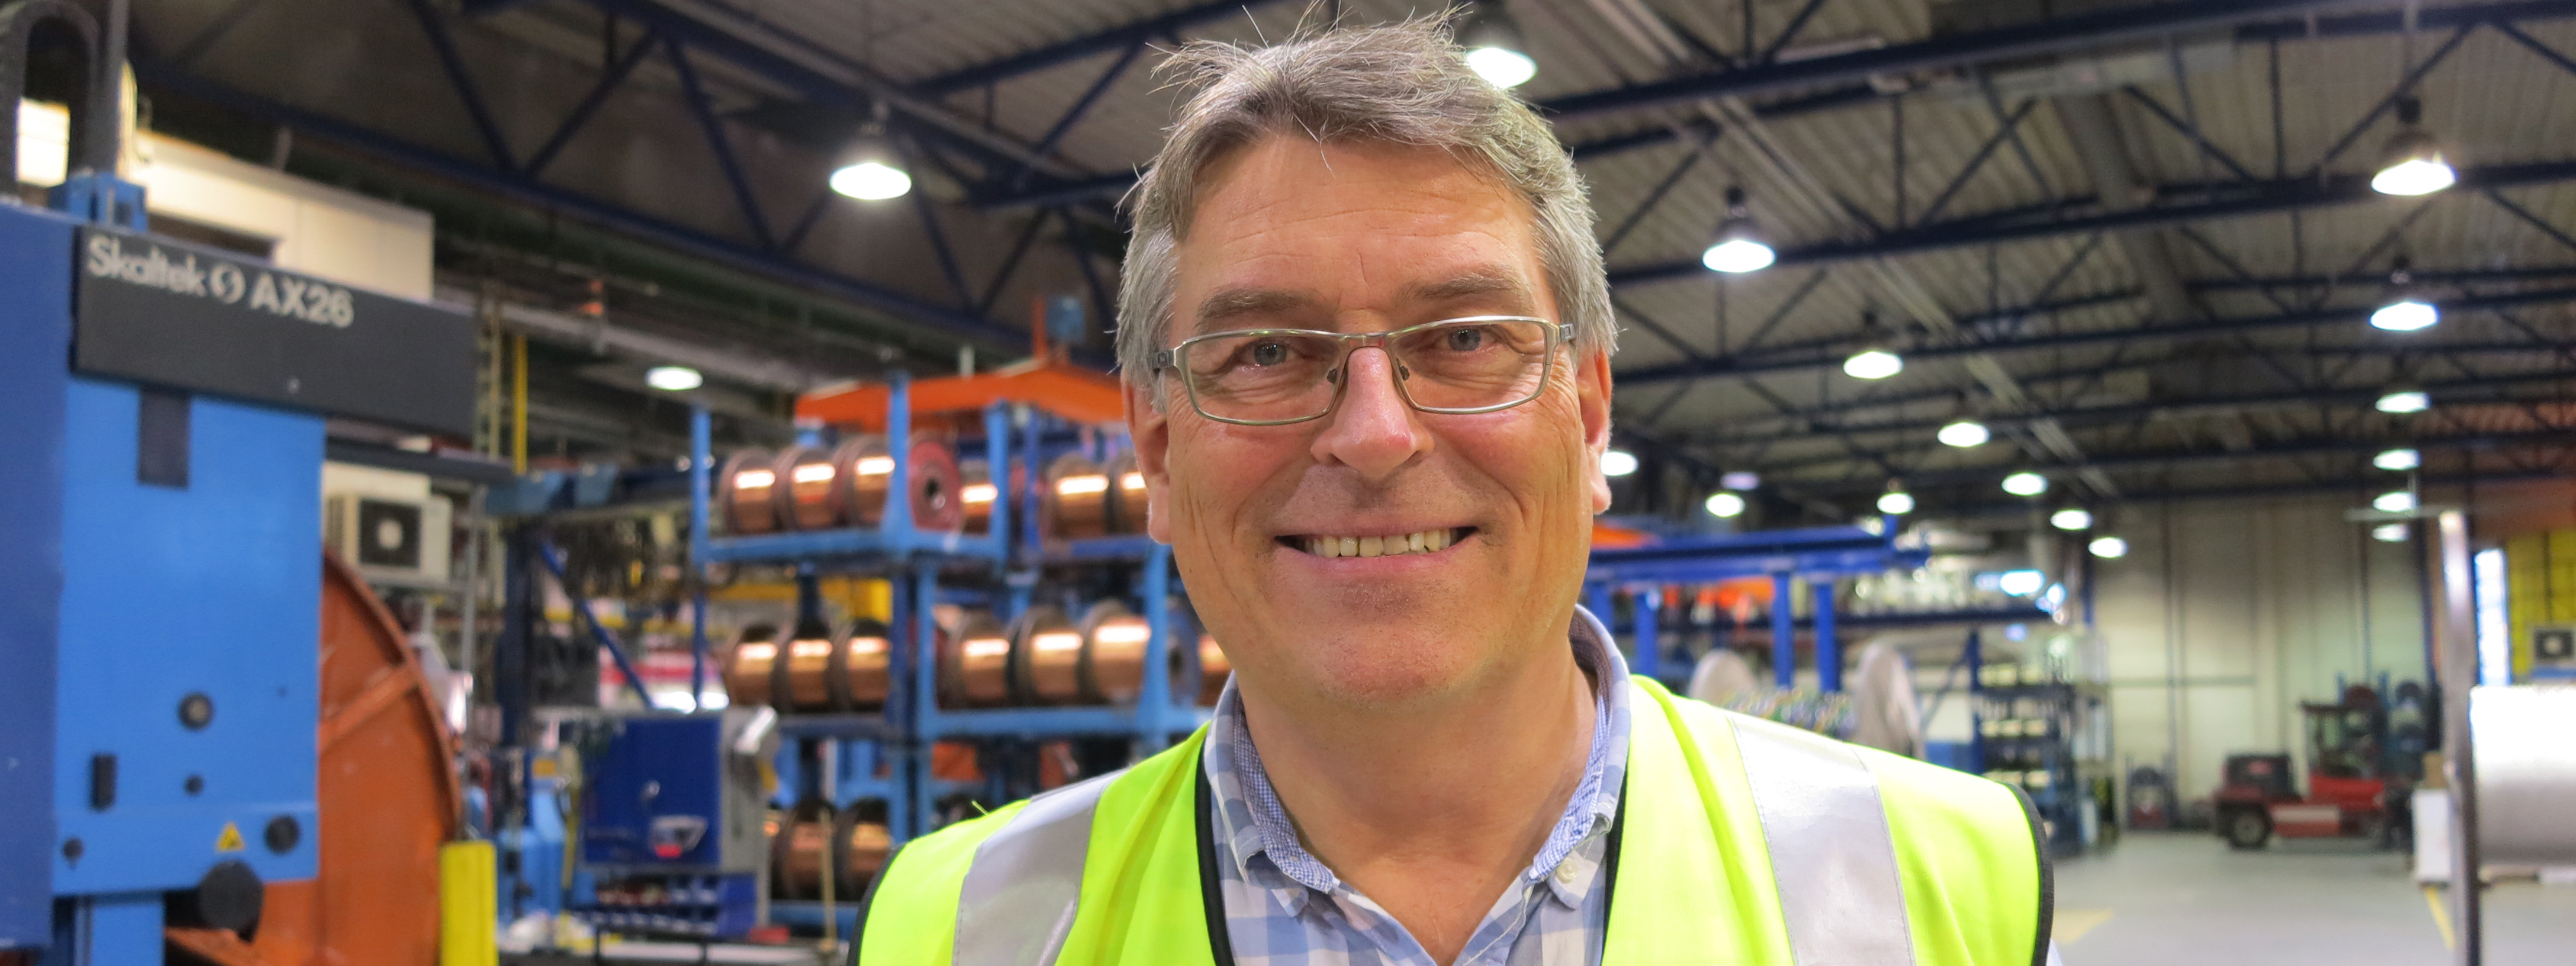 Knut Berg (56) blir ny direktør i Norges største sagbruk